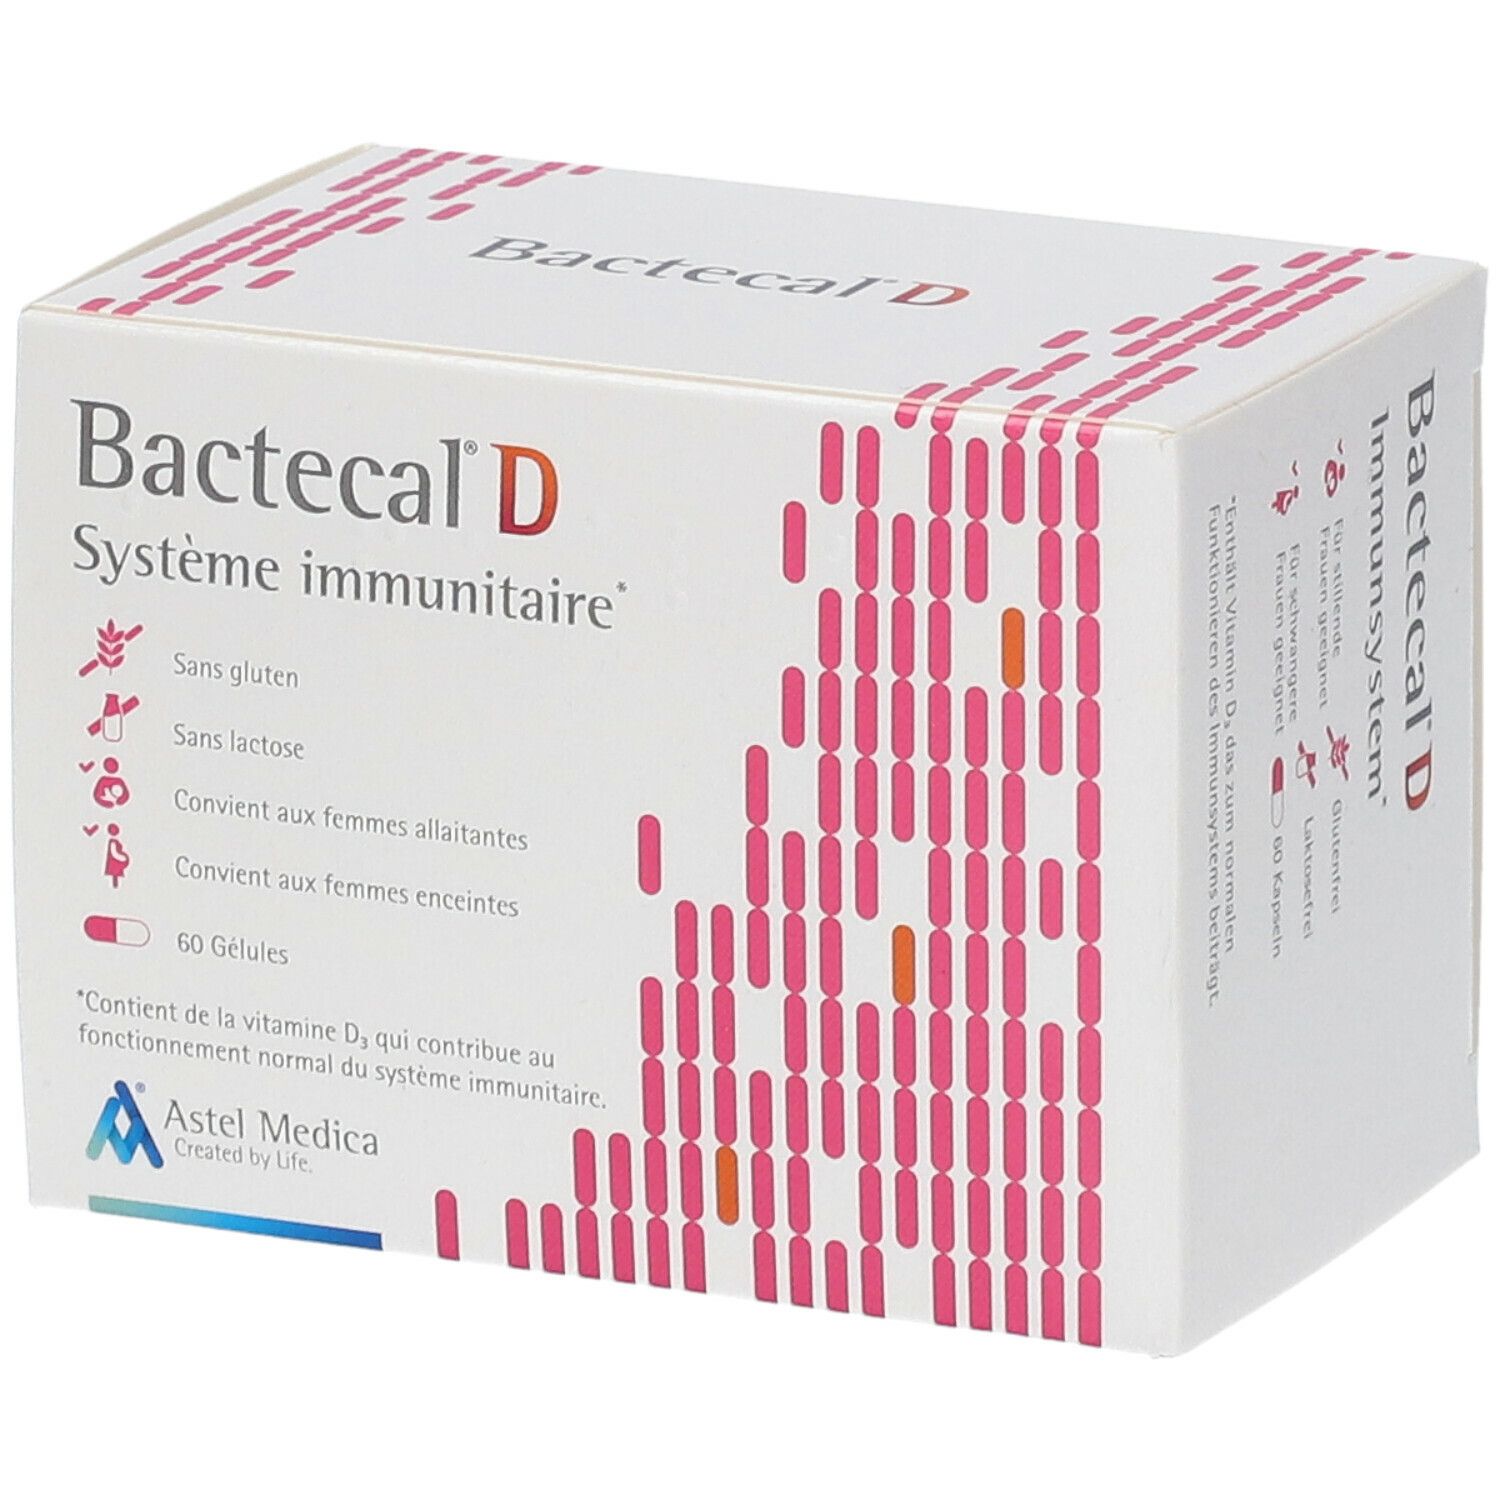 Bactecal® D